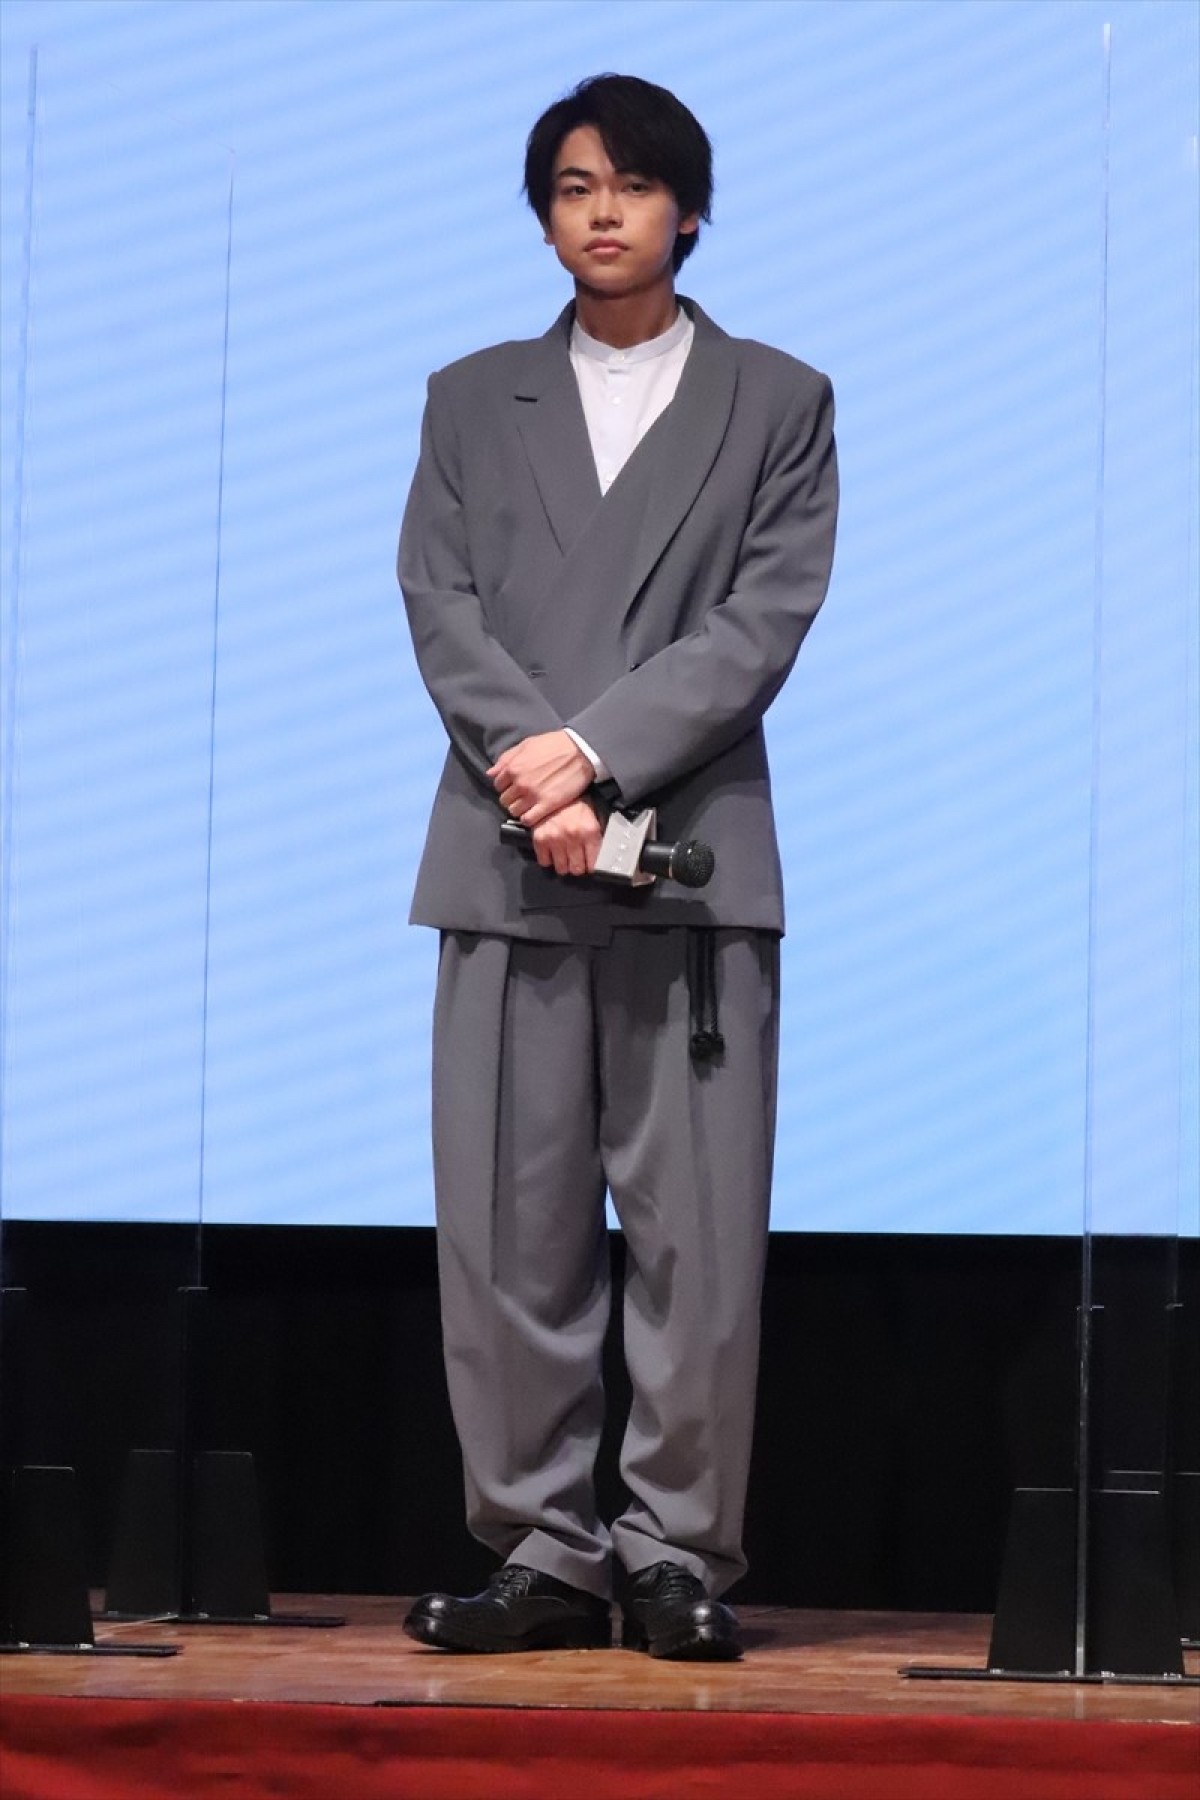 菅田将暉の弟・菅生新樹、俳優デビュー作で唐沢寿明と共演「夢のような時間」